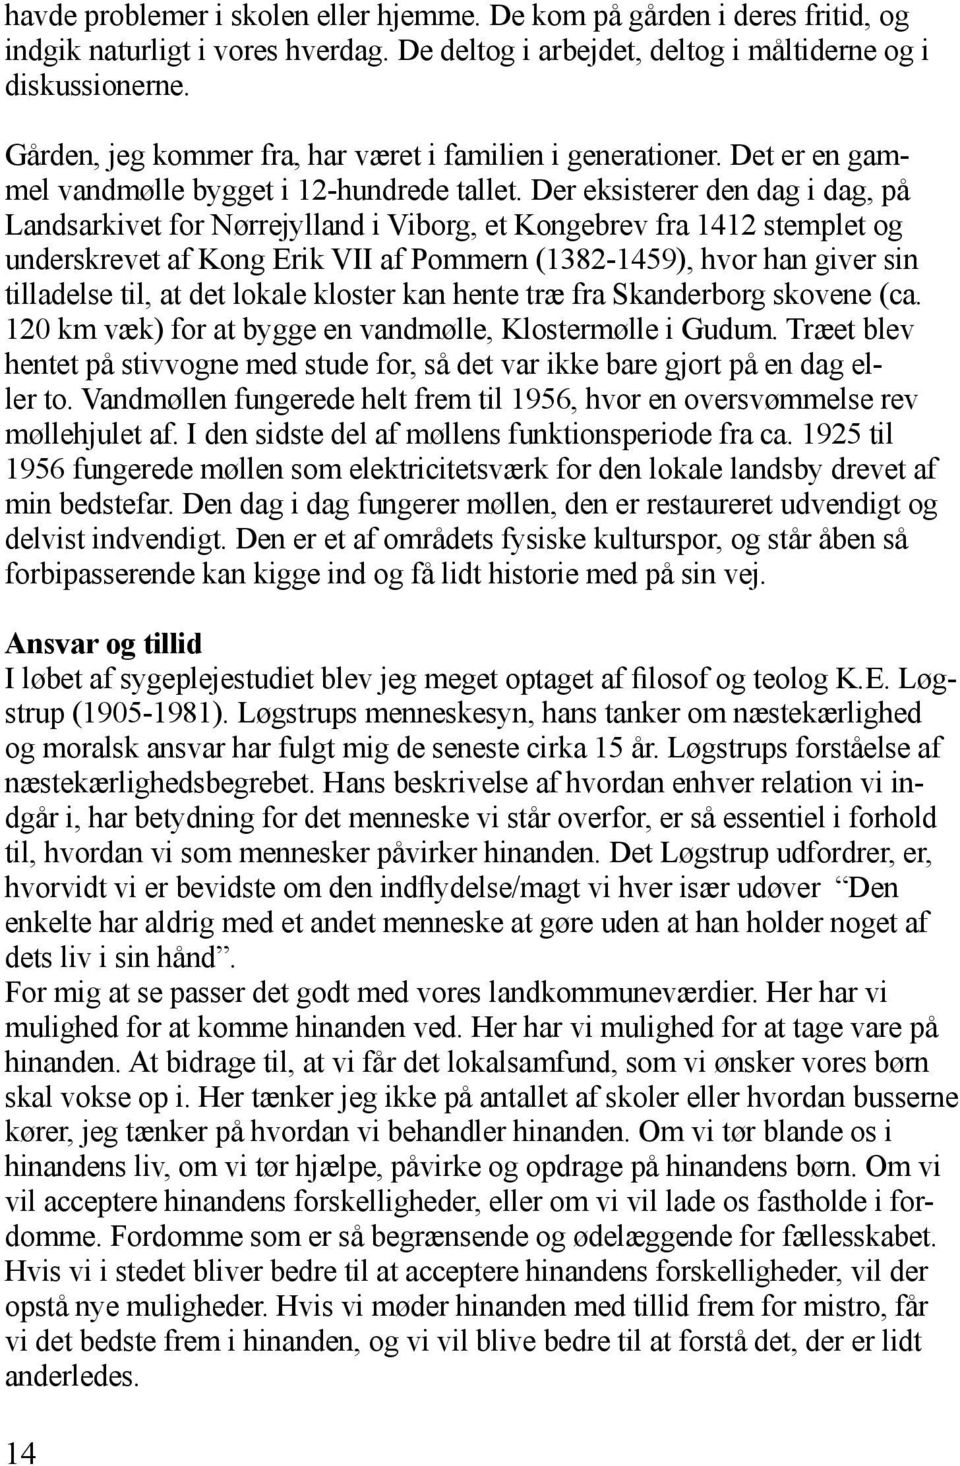 Der eksisterer den dag i dag, på Landsarkivet for Nørrejylland i Viborg, et Kongebrev fra 1412 stemplet og underskrevet af Kong Erik VII af Pommern (1382-1459), hvor han giver sin tilladelse til, at